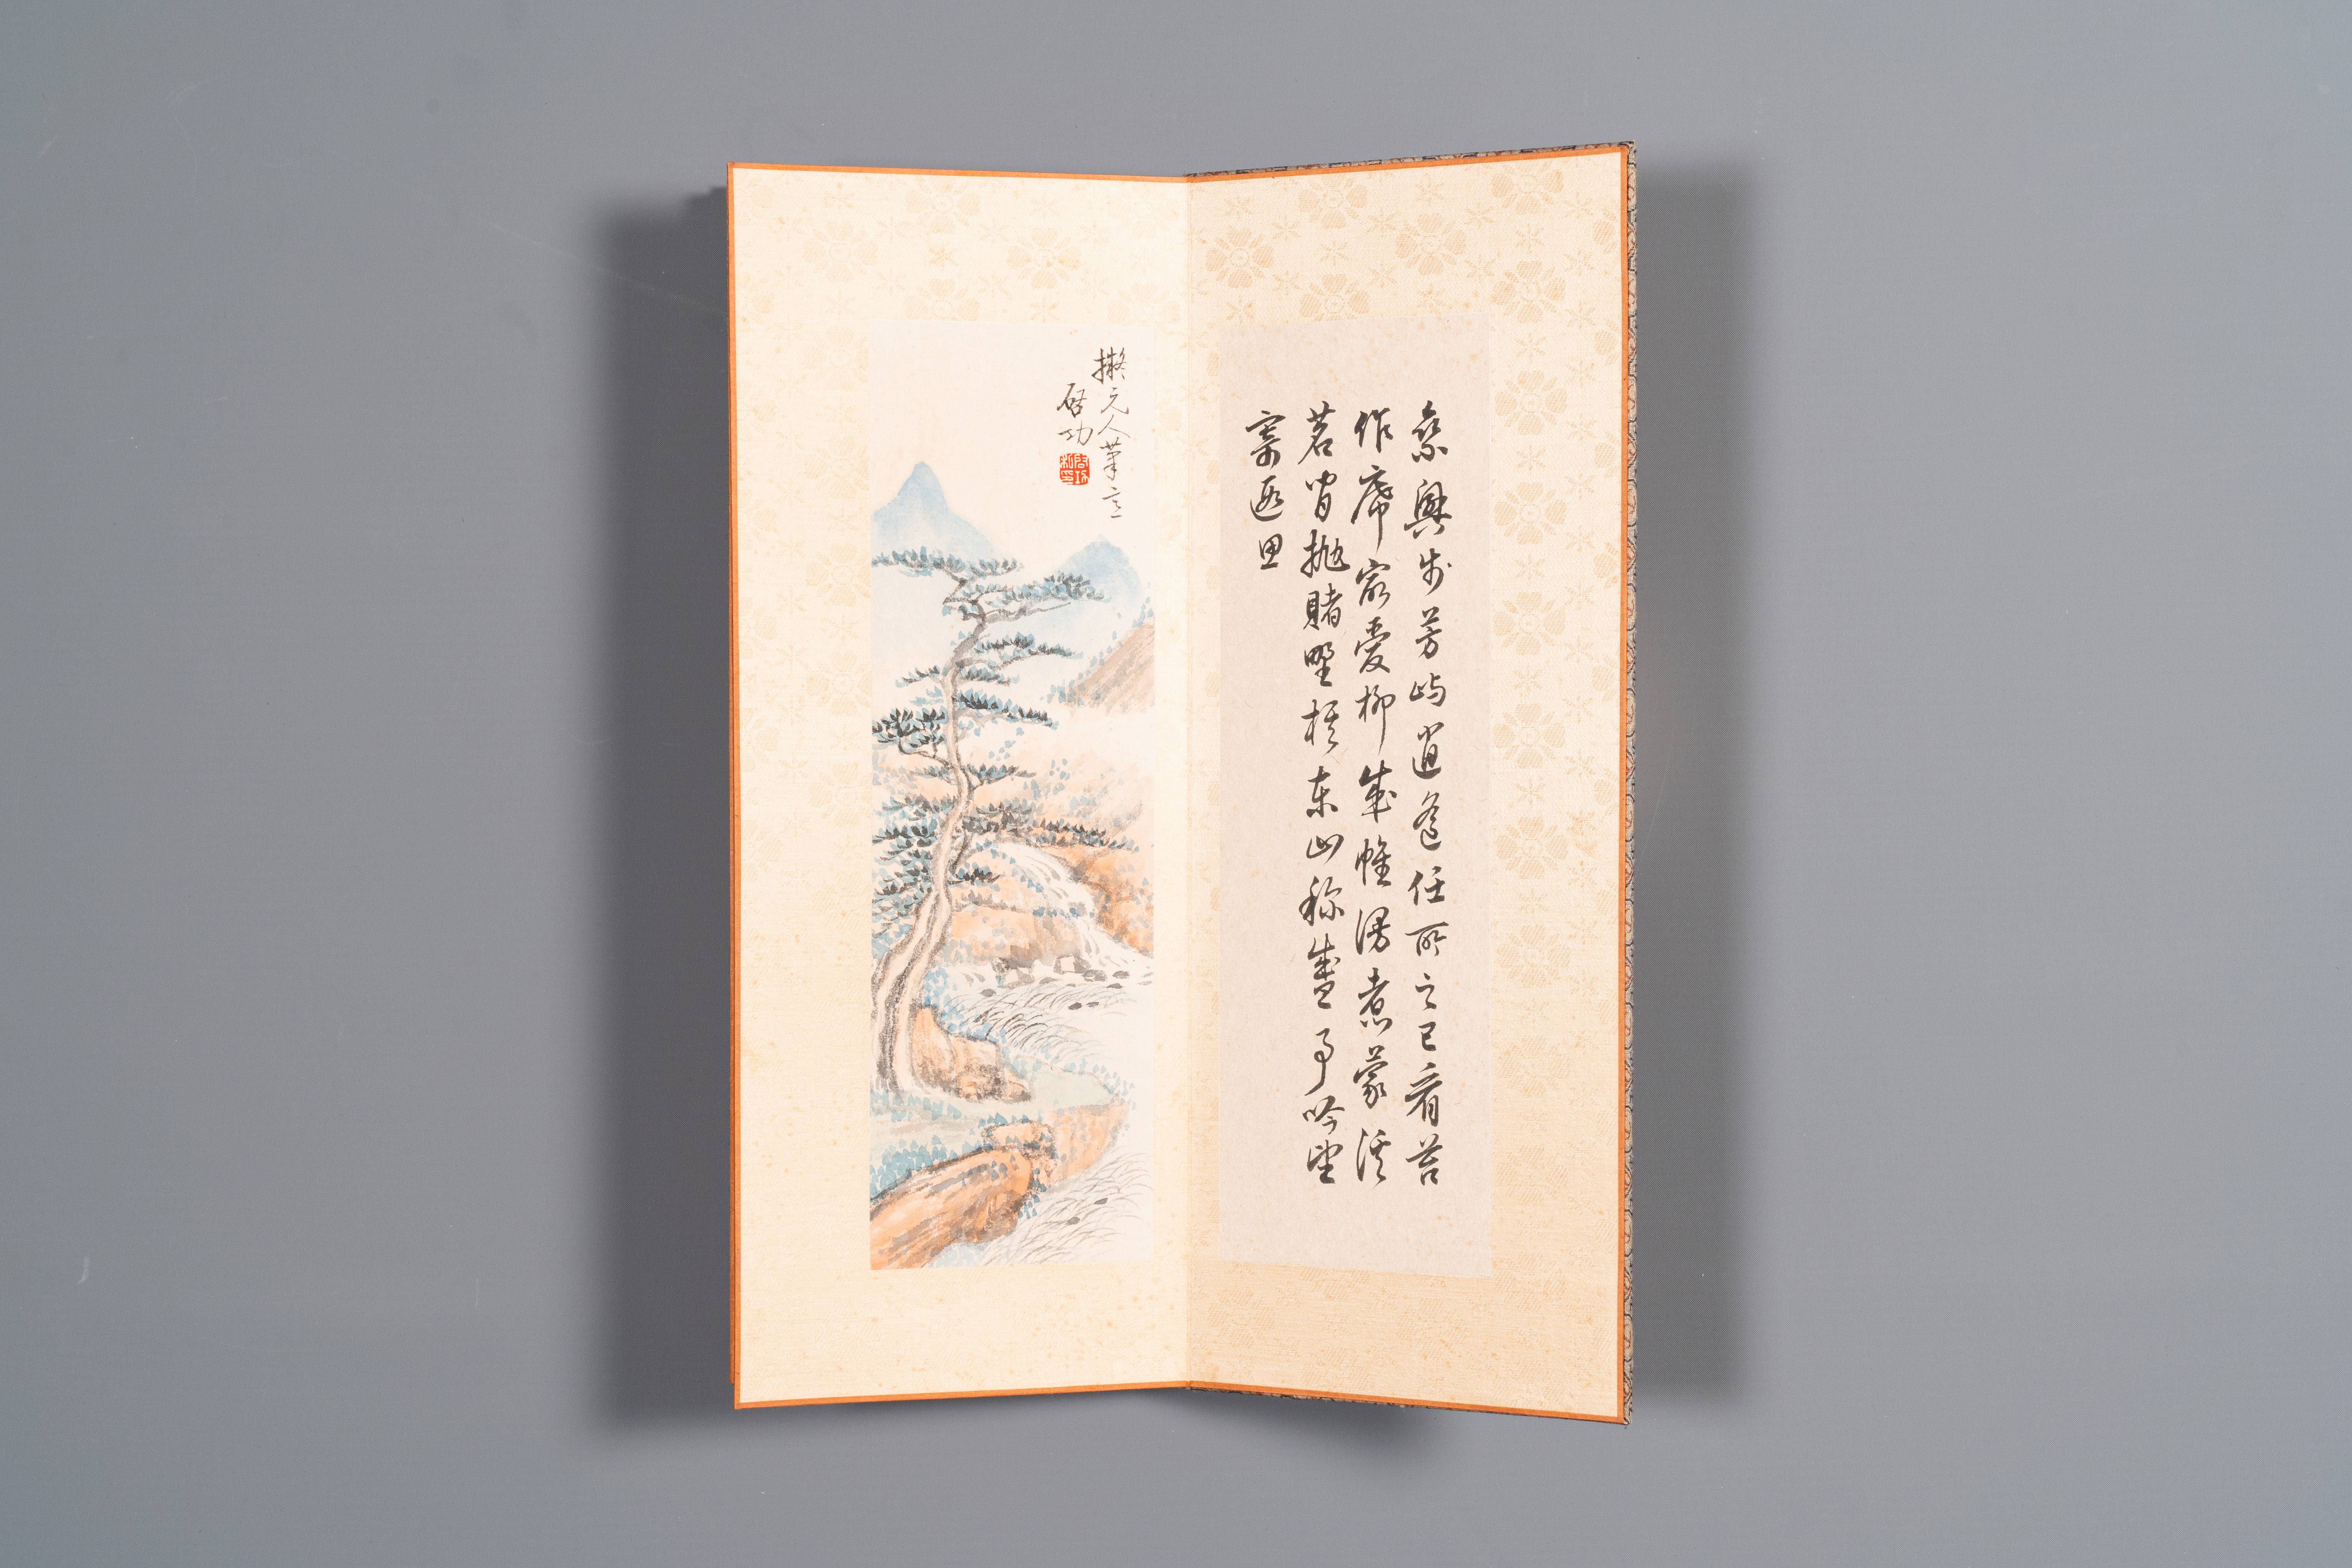 Three albums: 'Jiang Hanting æ±Ÿå¯’æ±€ (1904-1963), Lin Sanzhi æž—æ•£ä¹‹ (1898-1989) and Qi Gong å¯ - Image 16 of 23